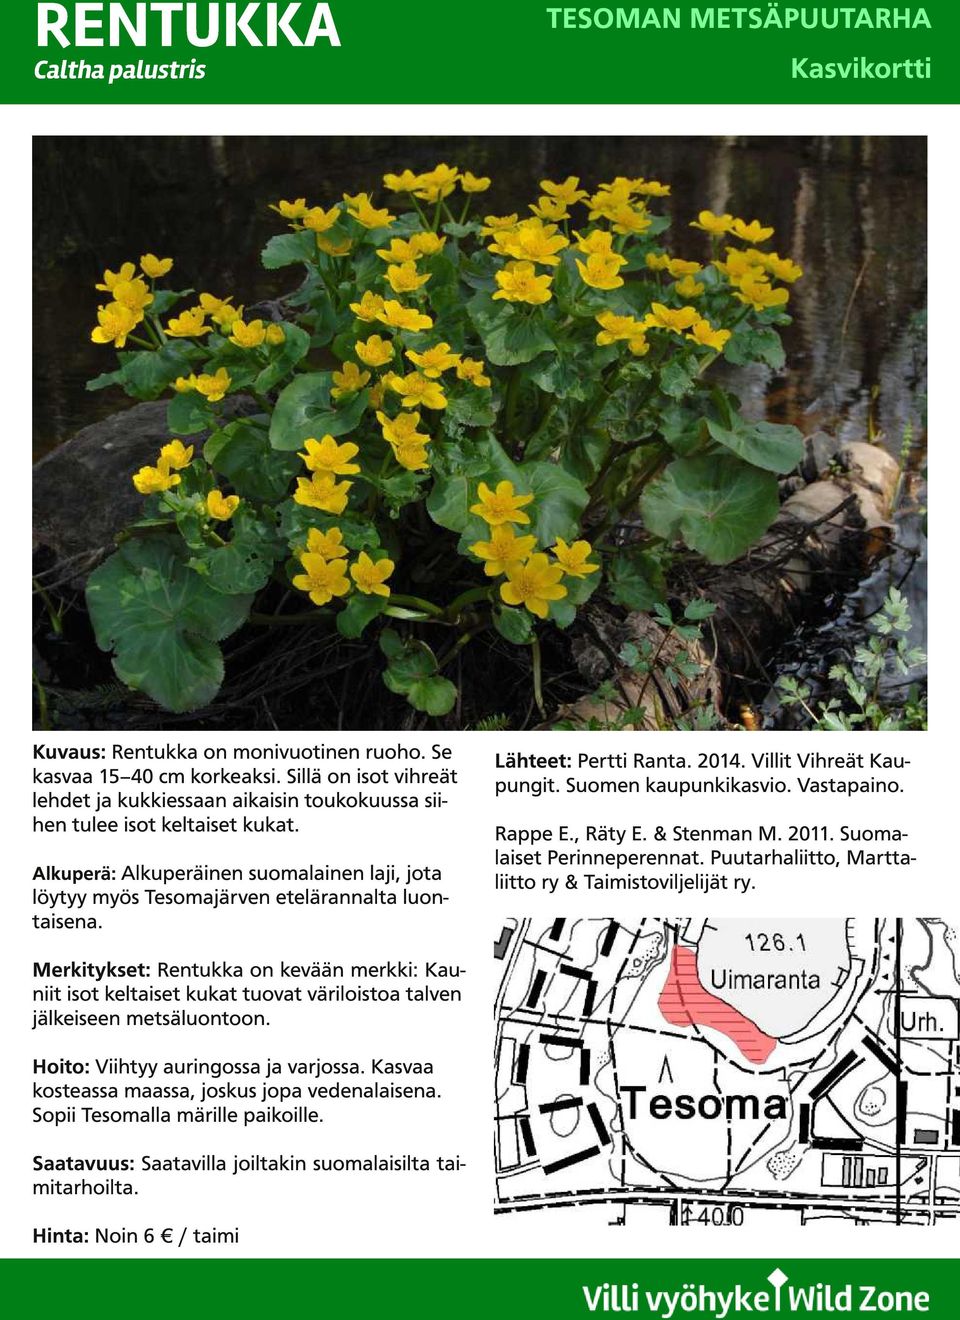 Merkitykset: Rentukka on kevään merkki: Kauniit isot keltaiset kukat tuovat väriloistoa talven jälkeiseen metsäluontoon. Hoito: Viihtyy auringossa ja varjossa.